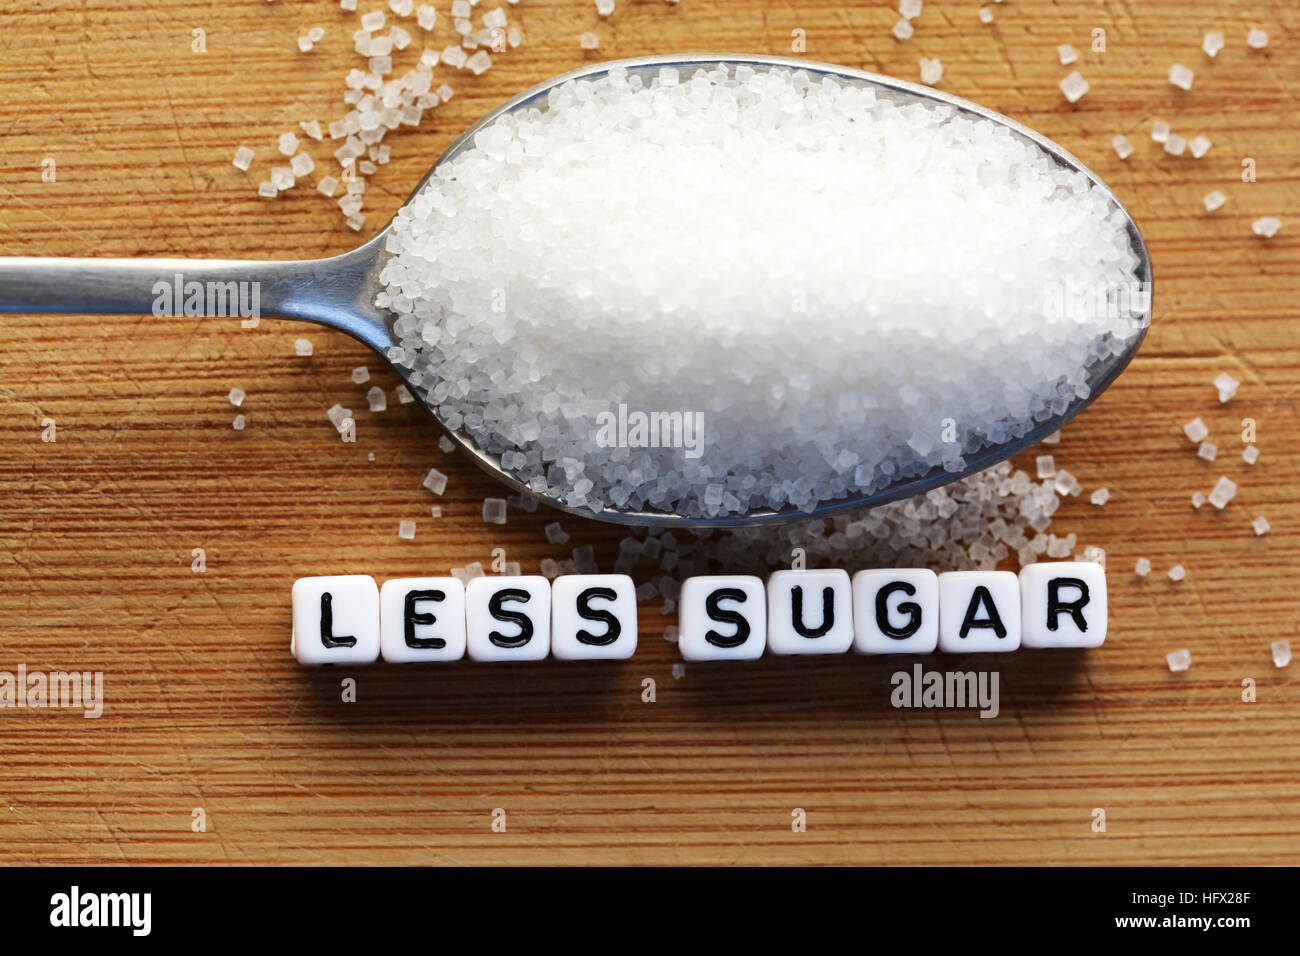 Weniger Zucker Text von gefliesten Buchstaben-Blöcke und Zucker Haufen auf einem Löffel, was darauf hindeutet, Diät Konzept Stockfoto